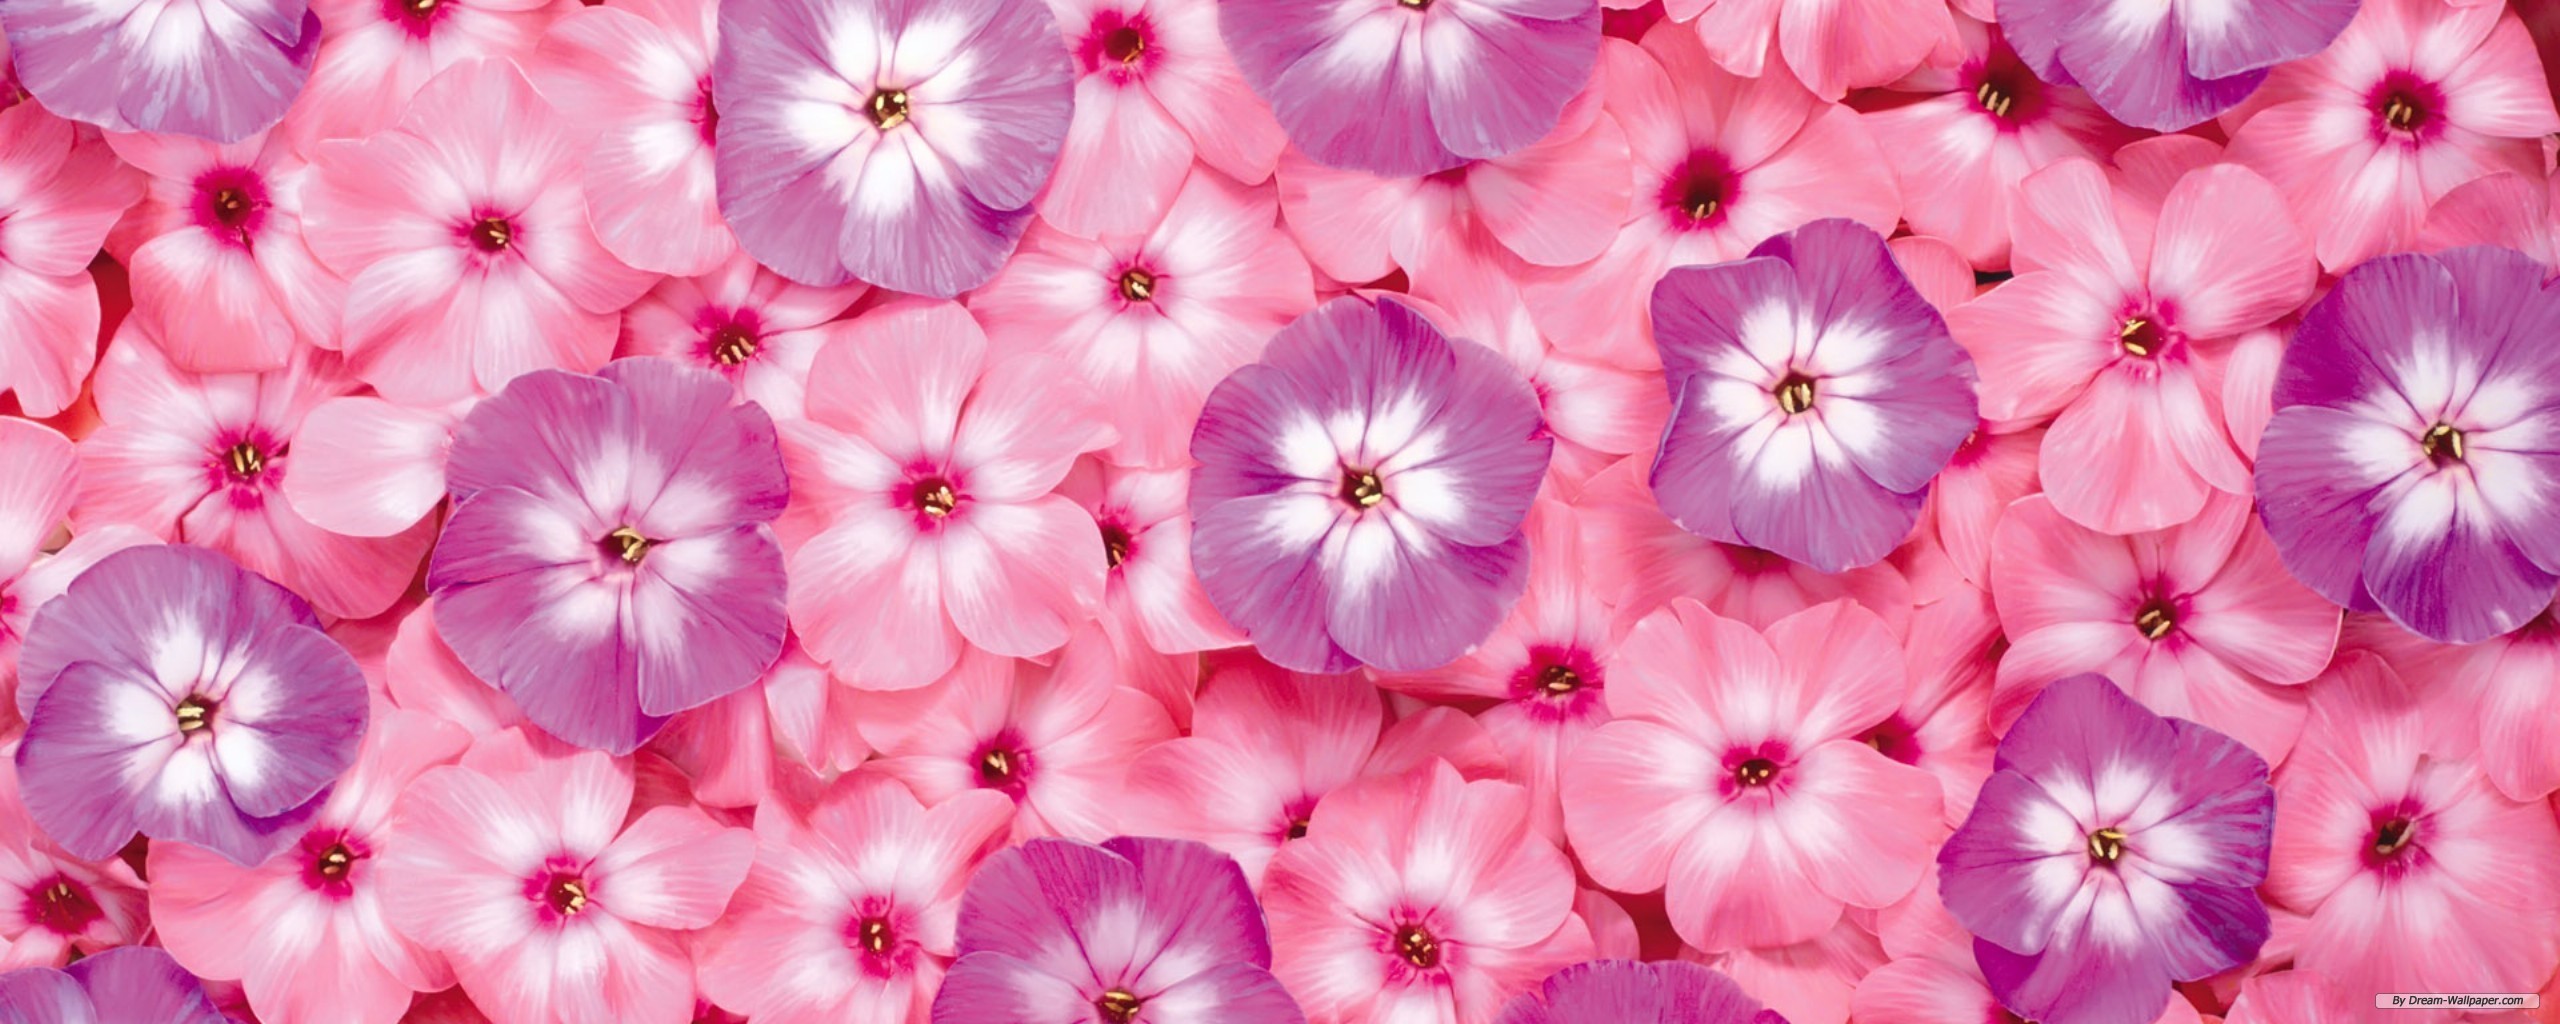 Free Wallpaper - Free Flower wallpaper - Dual Screen Flower ...